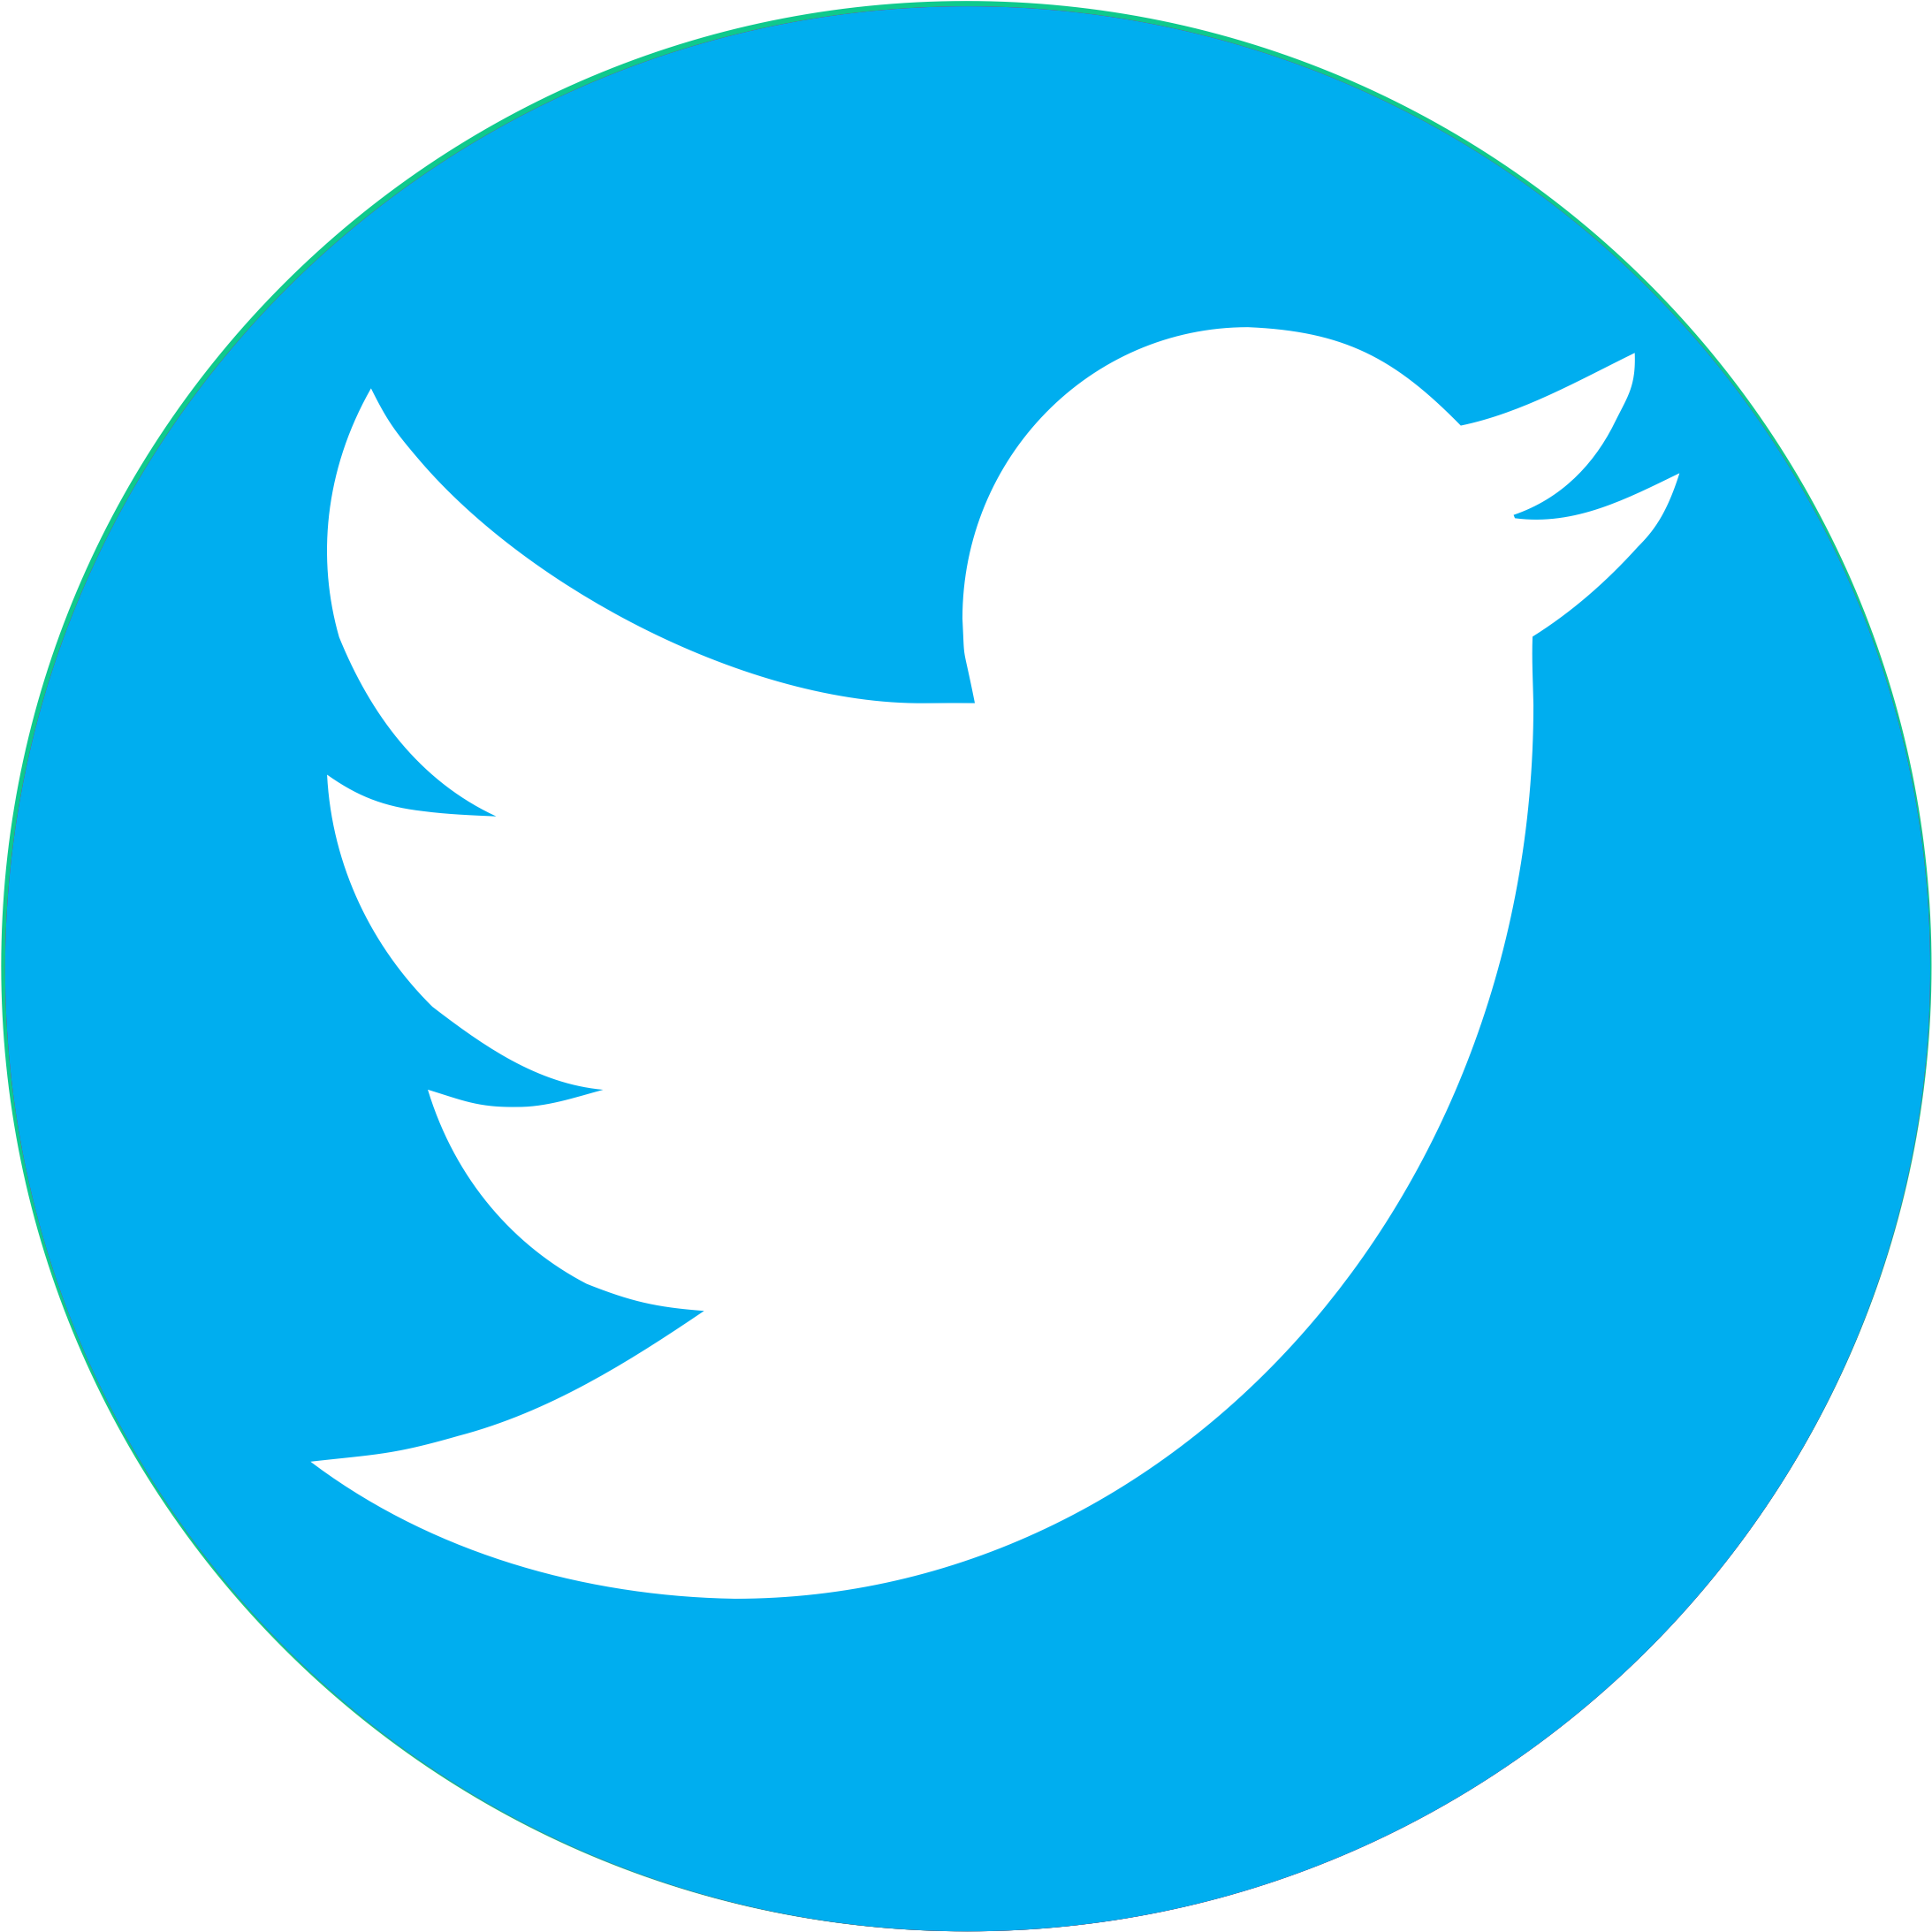 Download Twitter Logo Png Transparent Background - Logo Twitter Png PNG  Image with No Background - PNGkey.com